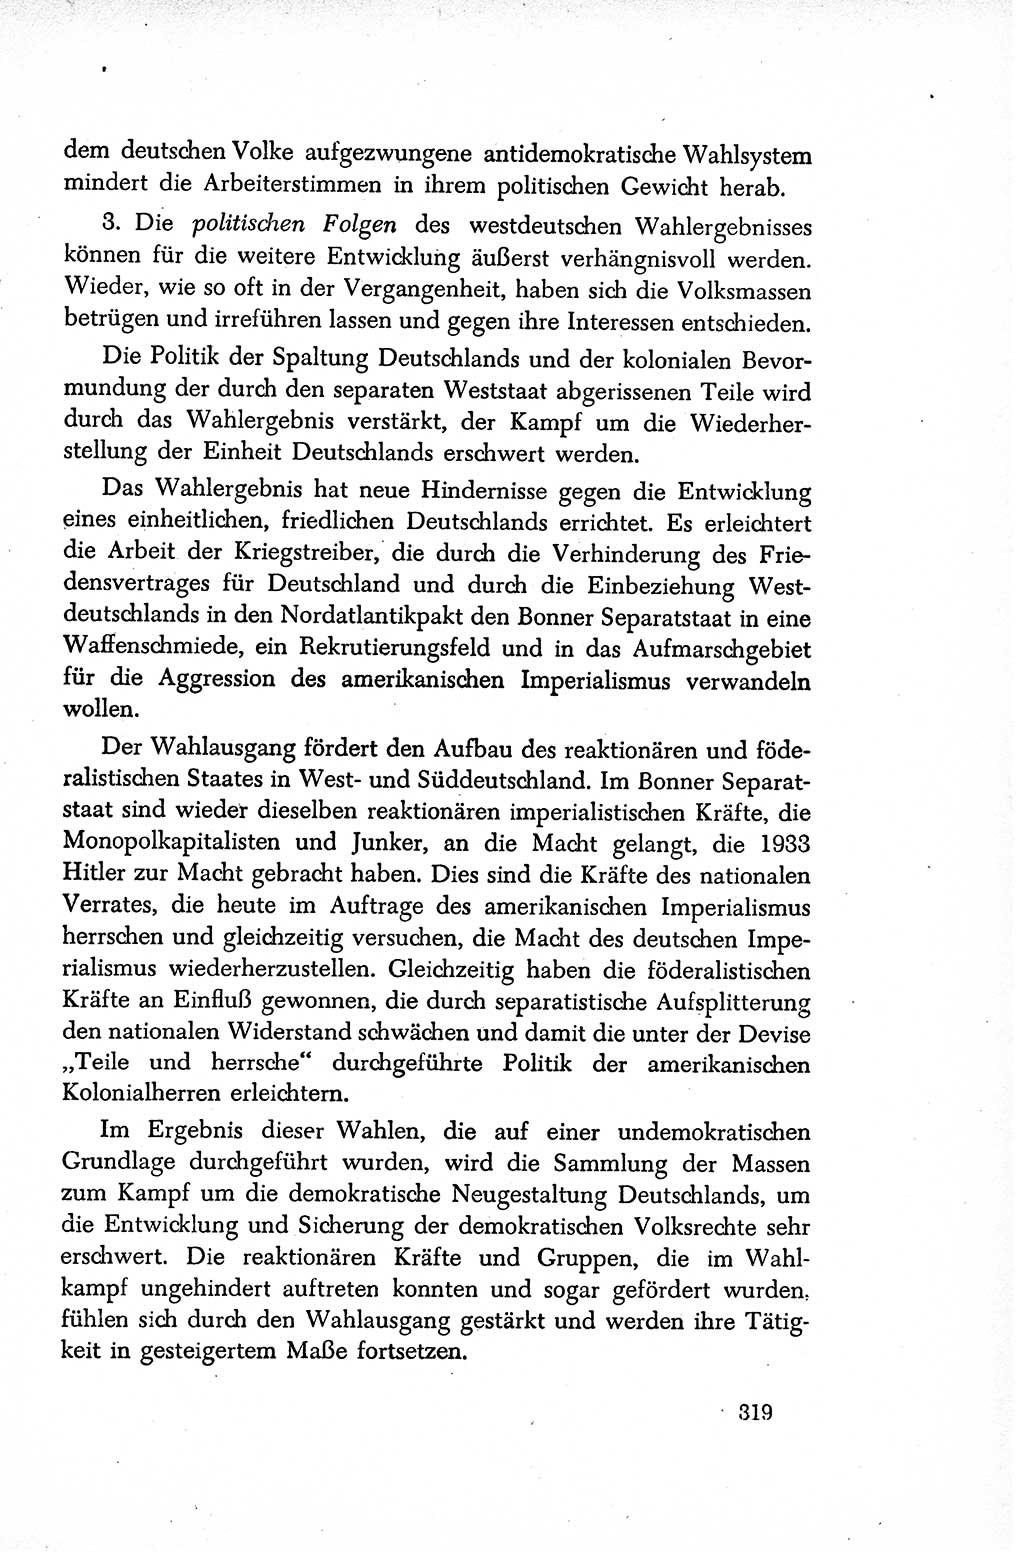 Dokumente der Sozialistischen Einheitspartei Deutschlands (SED) [Sowjetische Besatzungszone (SBZ) Deutschlands/Deutsche Demokratische Republik (DDR)] 1948-1950, Seite 319 (Dok. SED SBZ Dtl. DDR 1948-1950, S. 319)